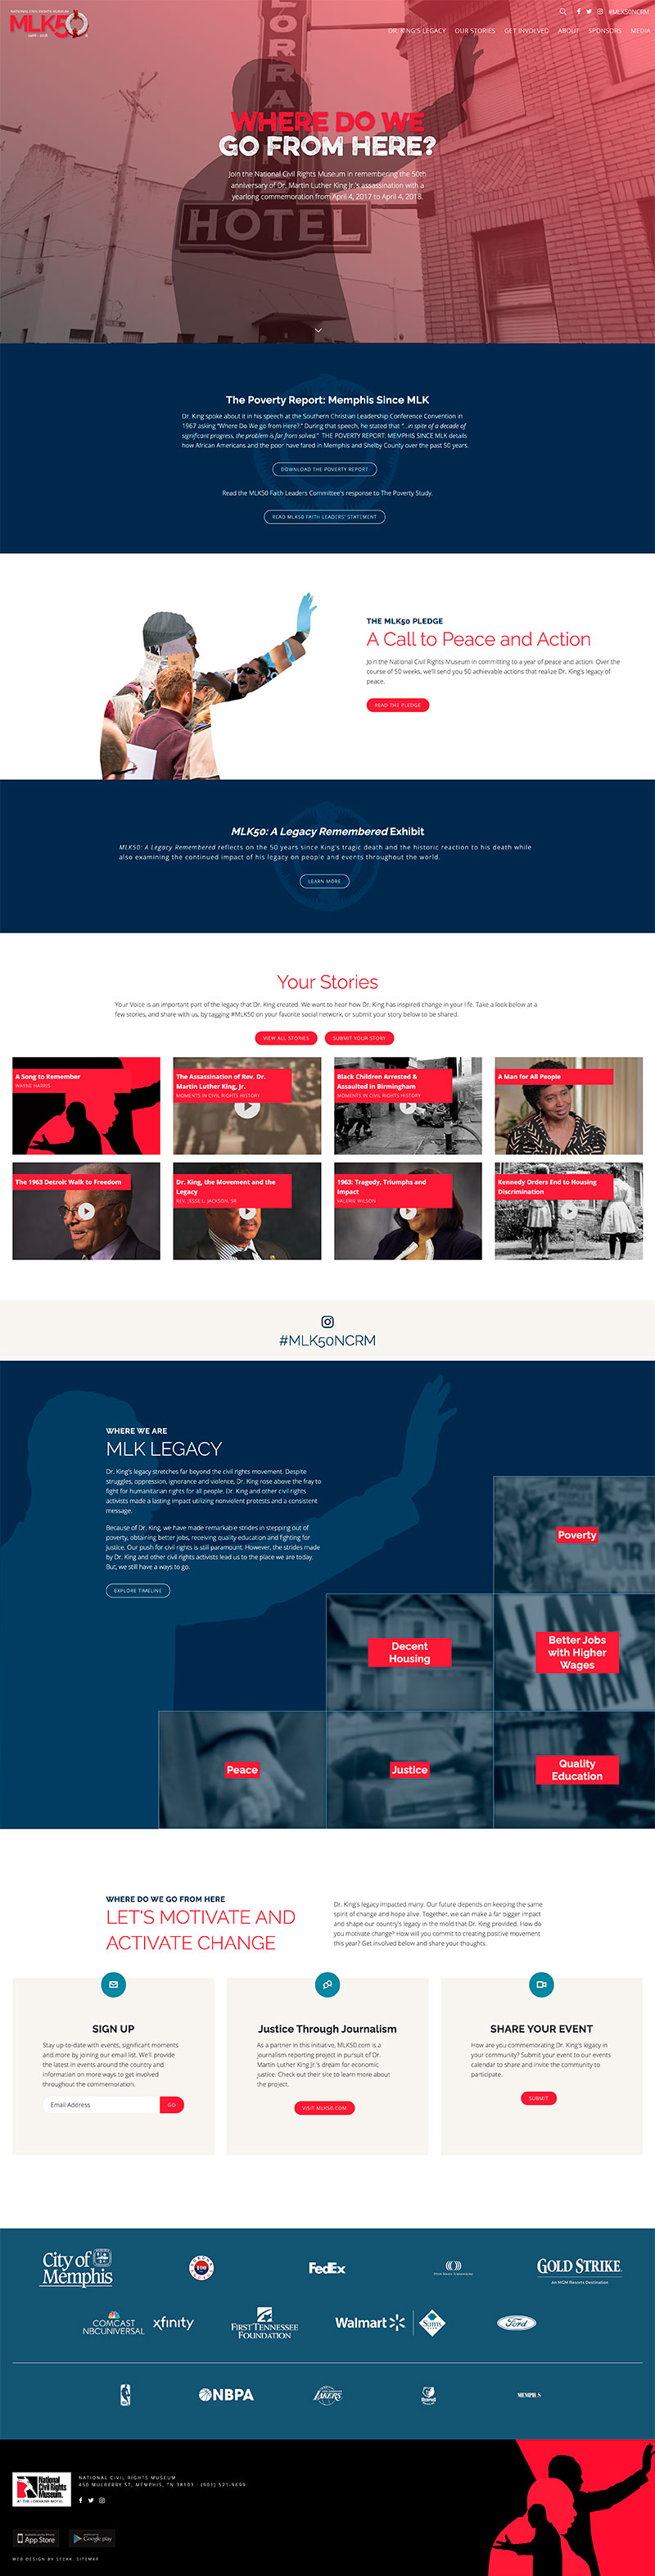 Screenshot of MLK50 website